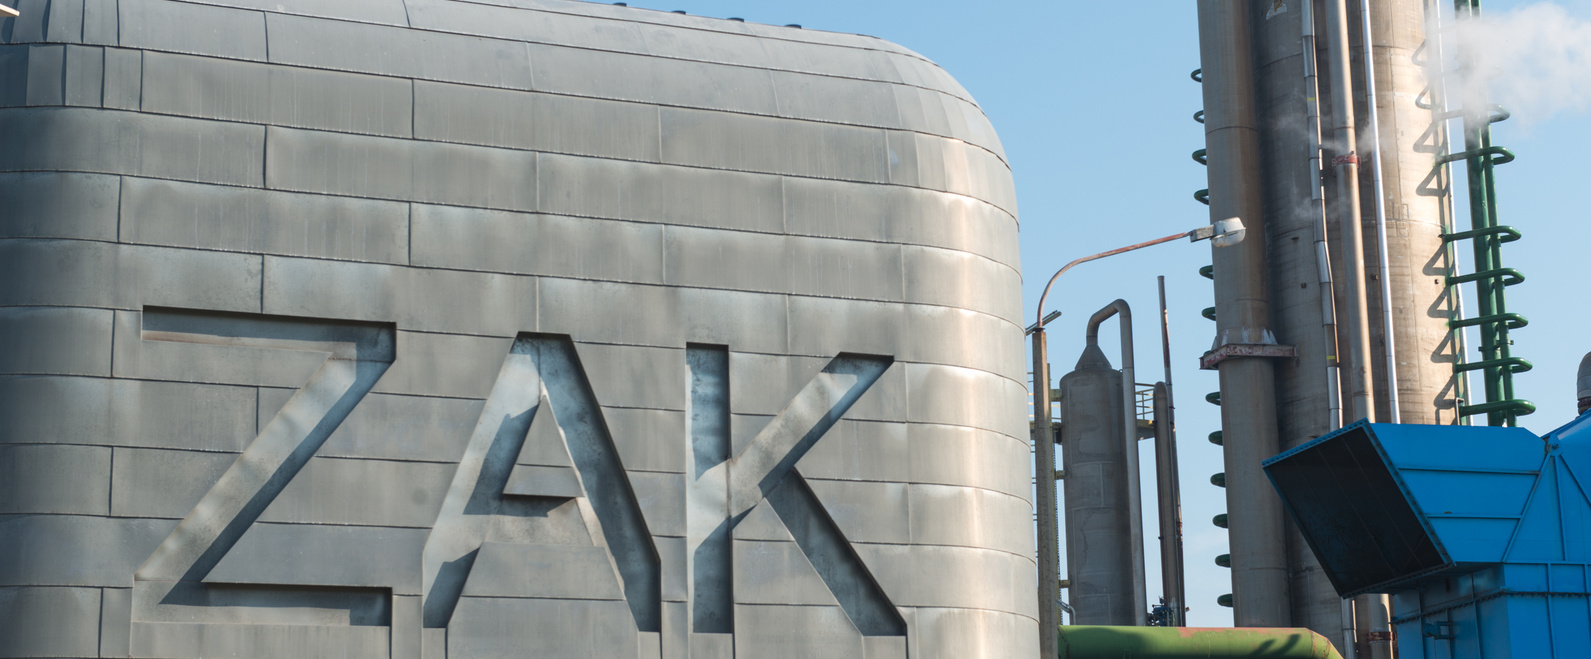 Stabilna sytuacja finansowa Grupy Azoty ZAK S.A. przy ambitnym planie inwestycyjno-remontowym